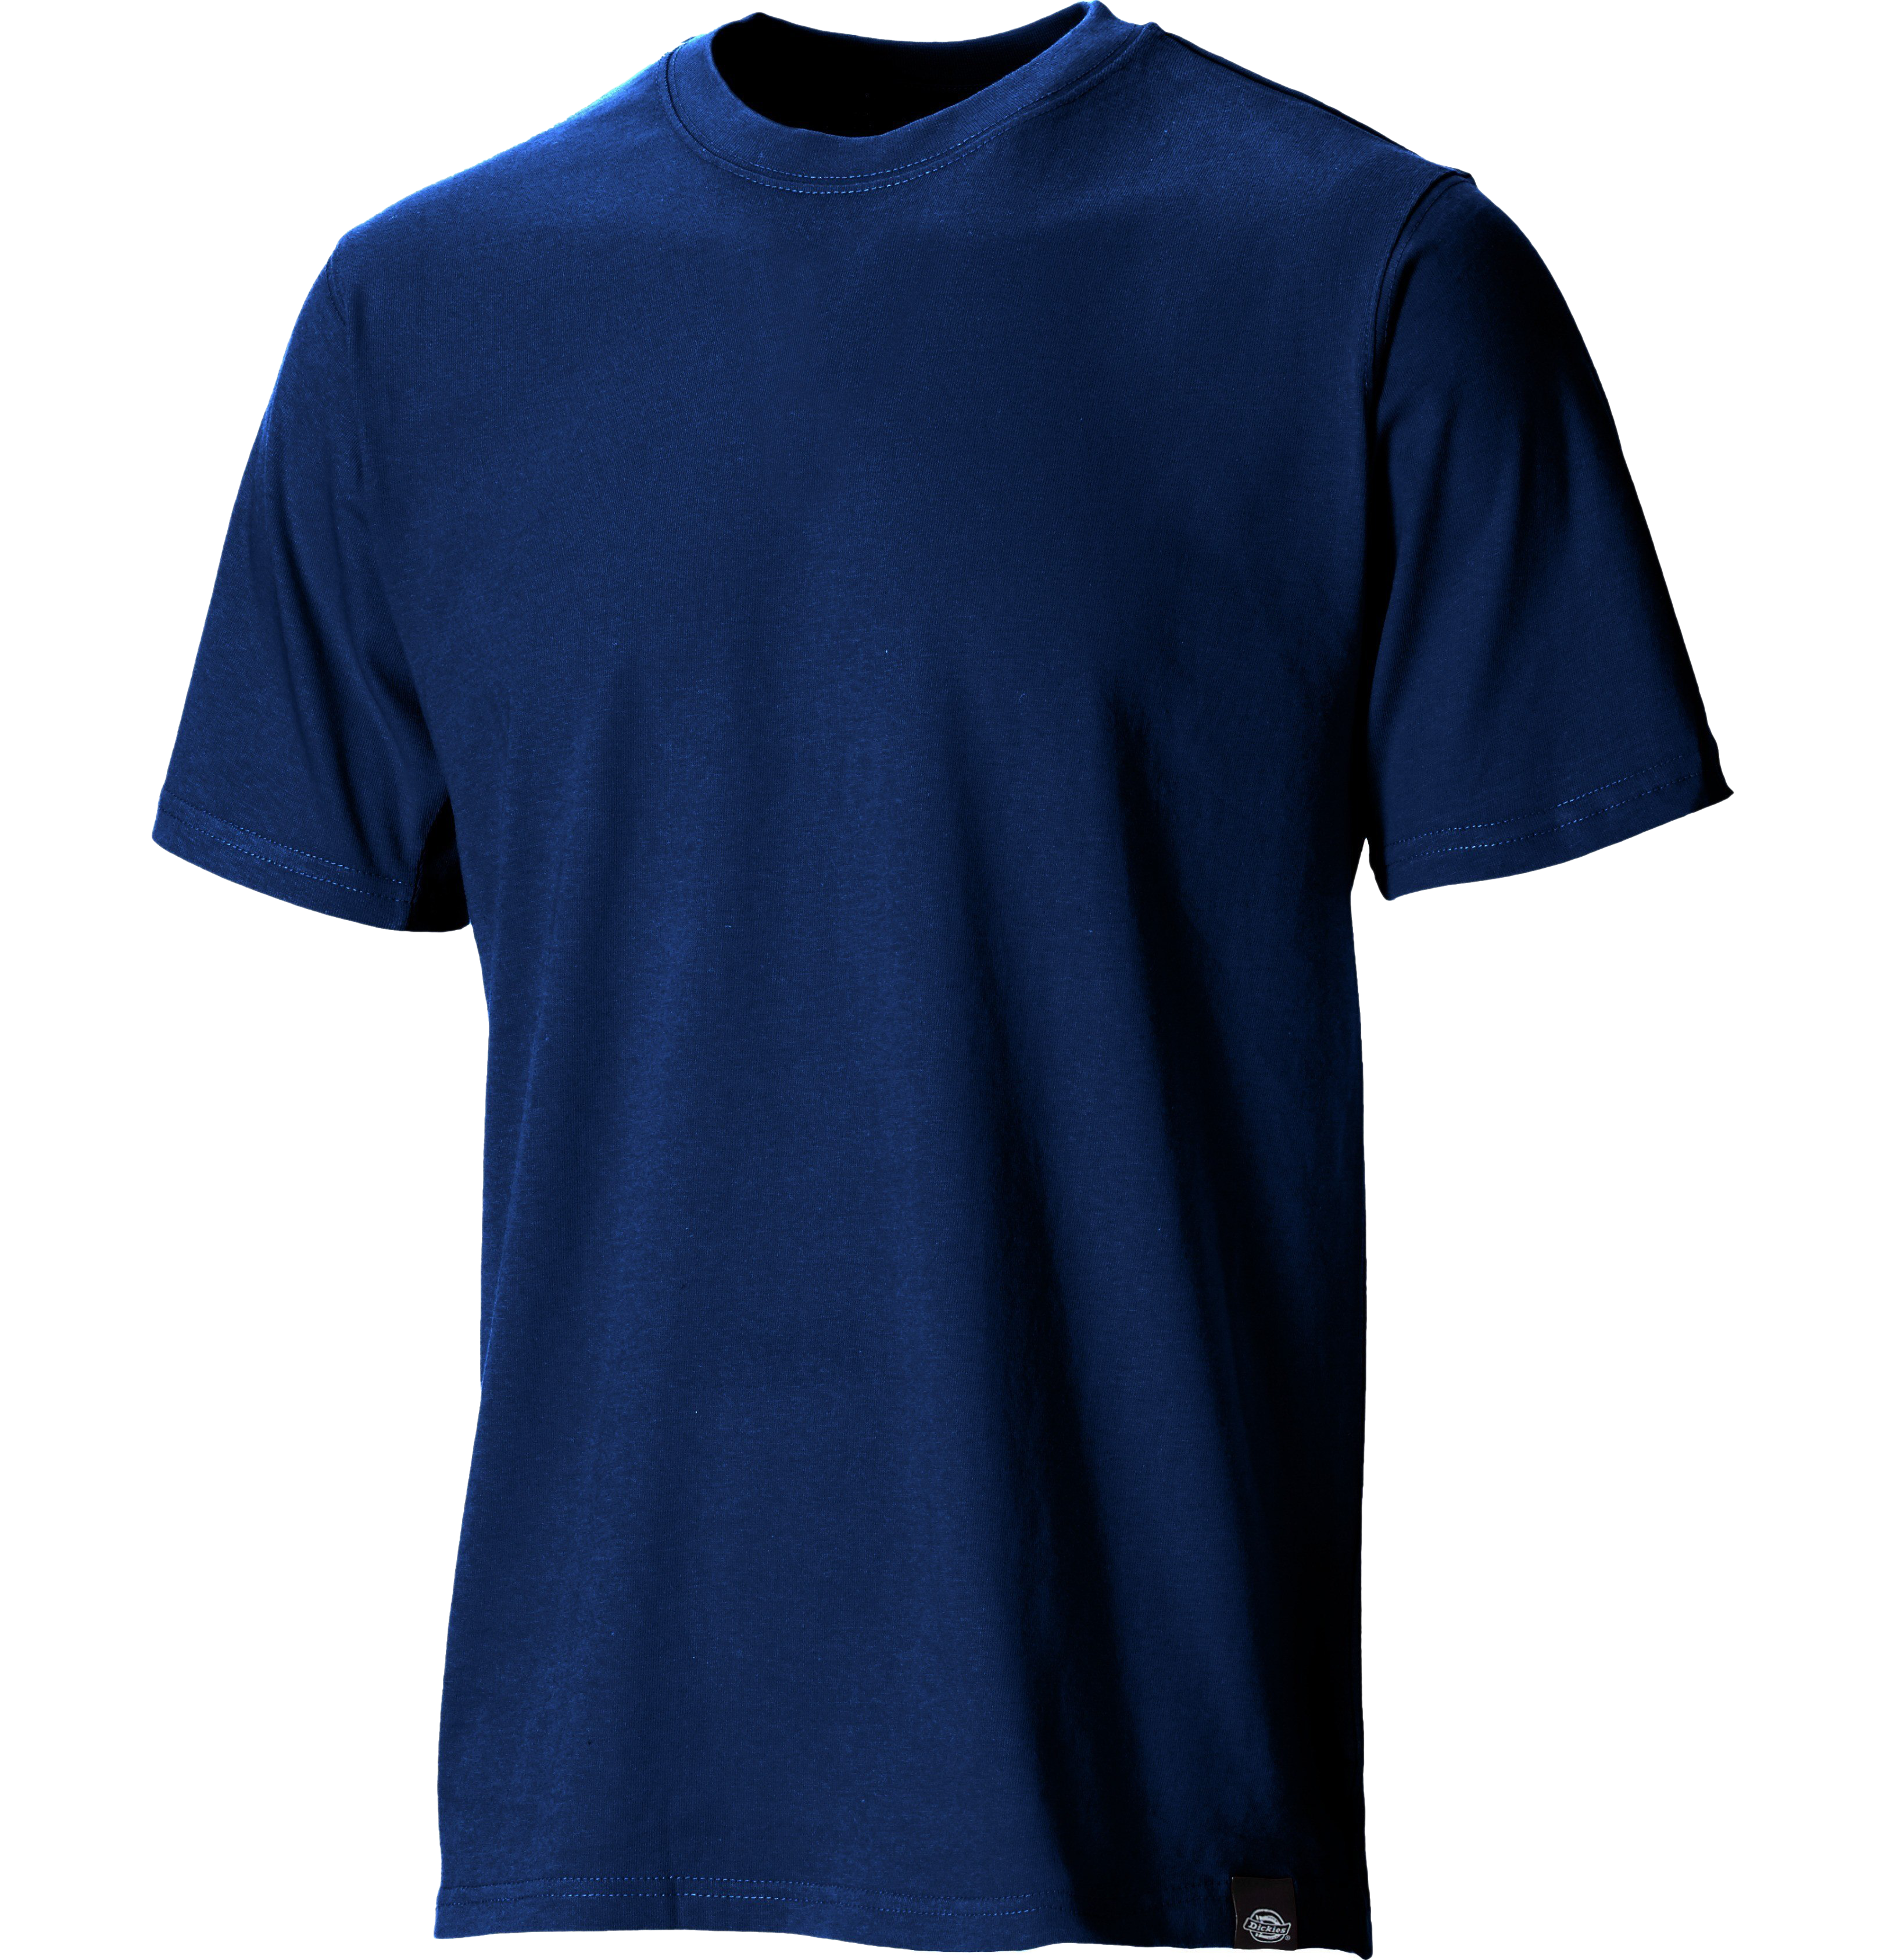 Plain Blue T-Shirt transparent Hintergrund PNG